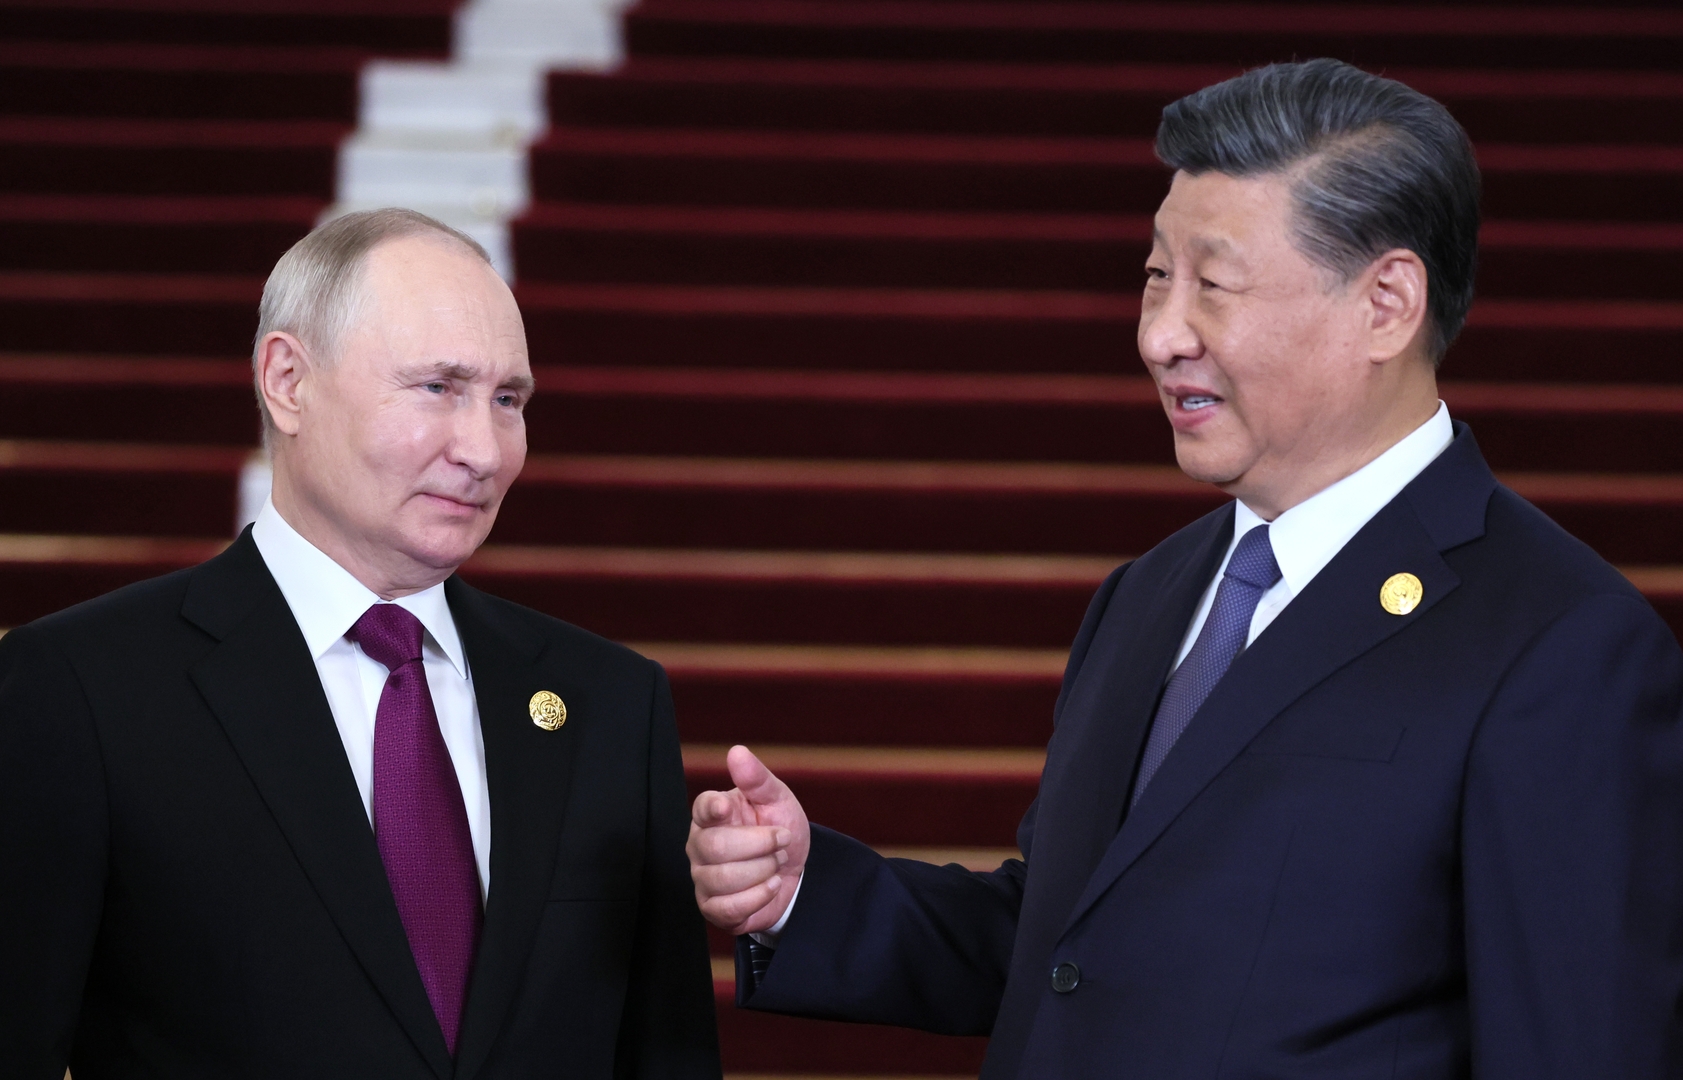 بوتين: نقيم إيجابيا الرؤية الصينية للتسوية في أوكرانيا